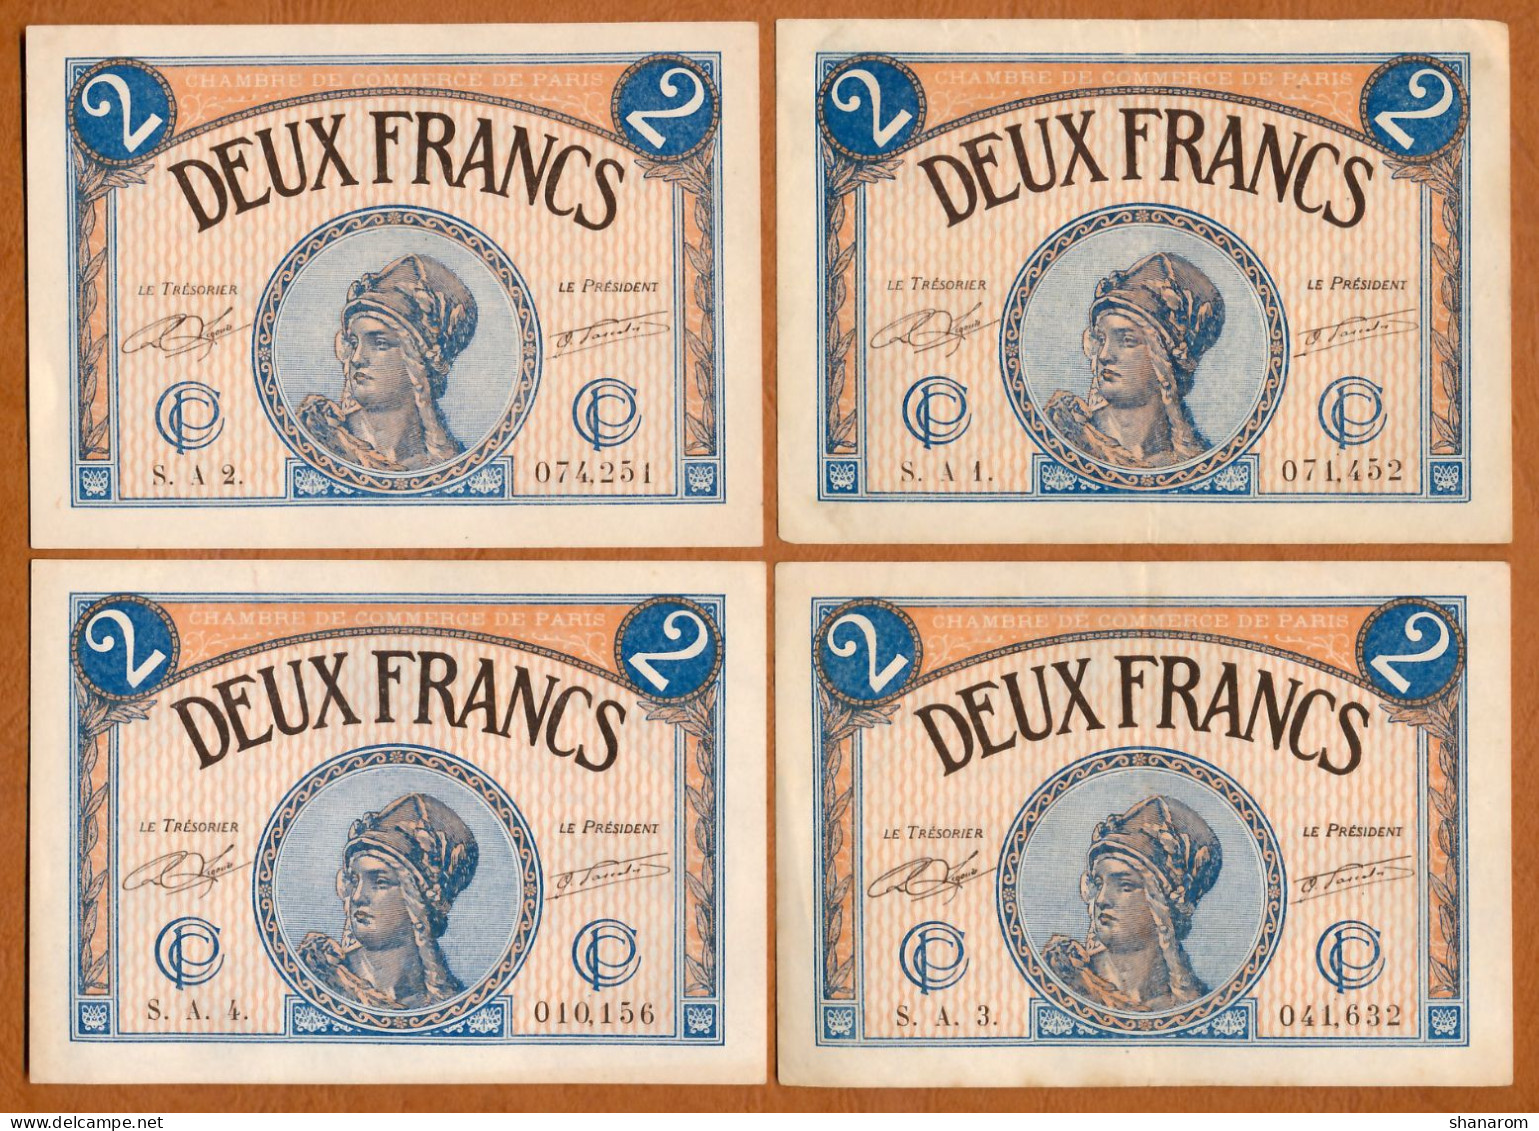 1914-20 // C.D.C. // PARIS (75) // Mars 1920 // 23 Billets // Séries Différentes // Deux Francs - Chambre De Commerce